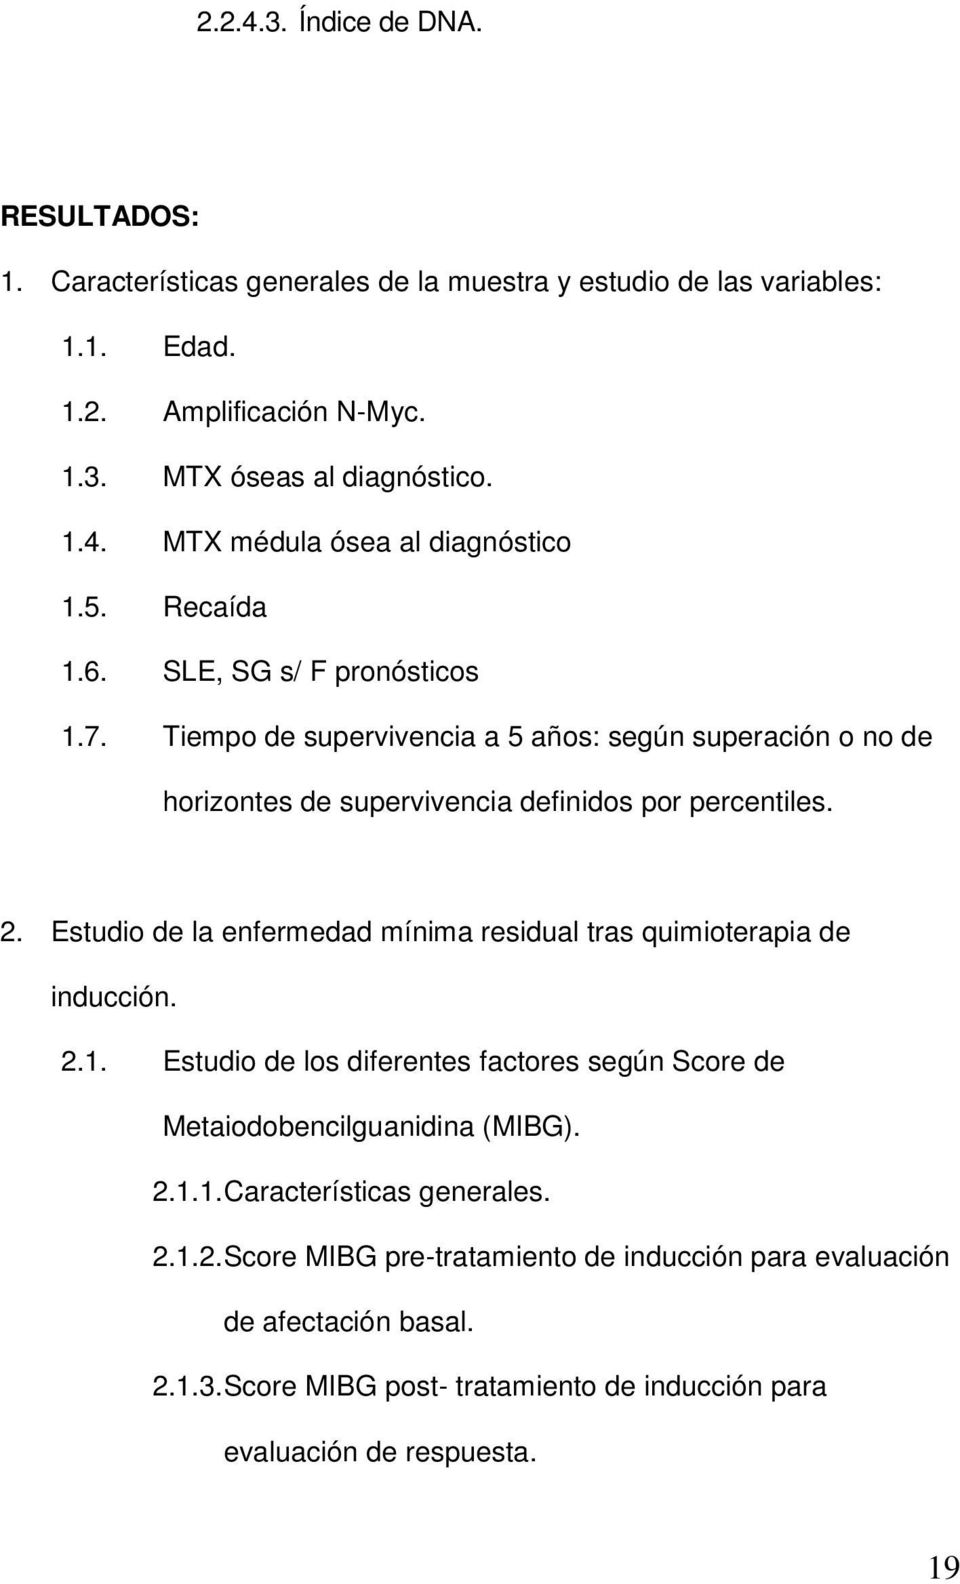 Estudio de la enfermedad mínima residual tras quimioterapia de inducción. 2.1. Estudio de los diferentes factores según Score de Metaiodobencilguanidina (MIBG). 2.1.1. Características generales.